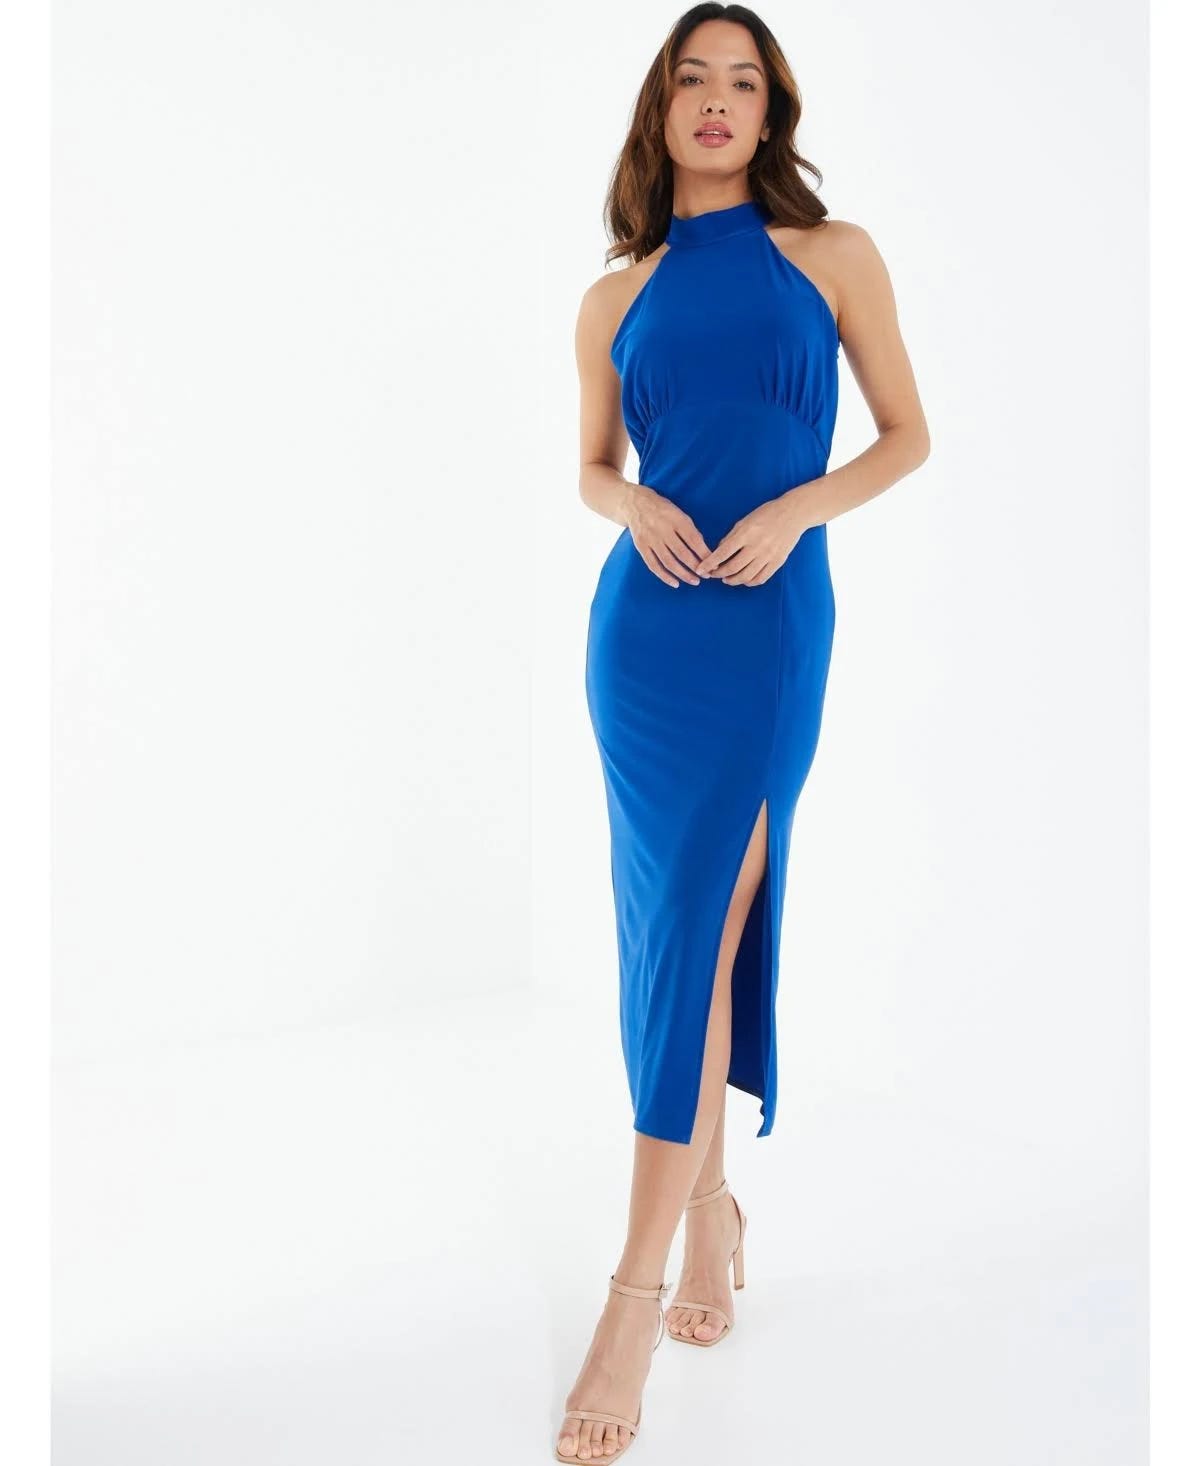 Elegant Royal Blue Halter Midi Dress for Formal Events | Image